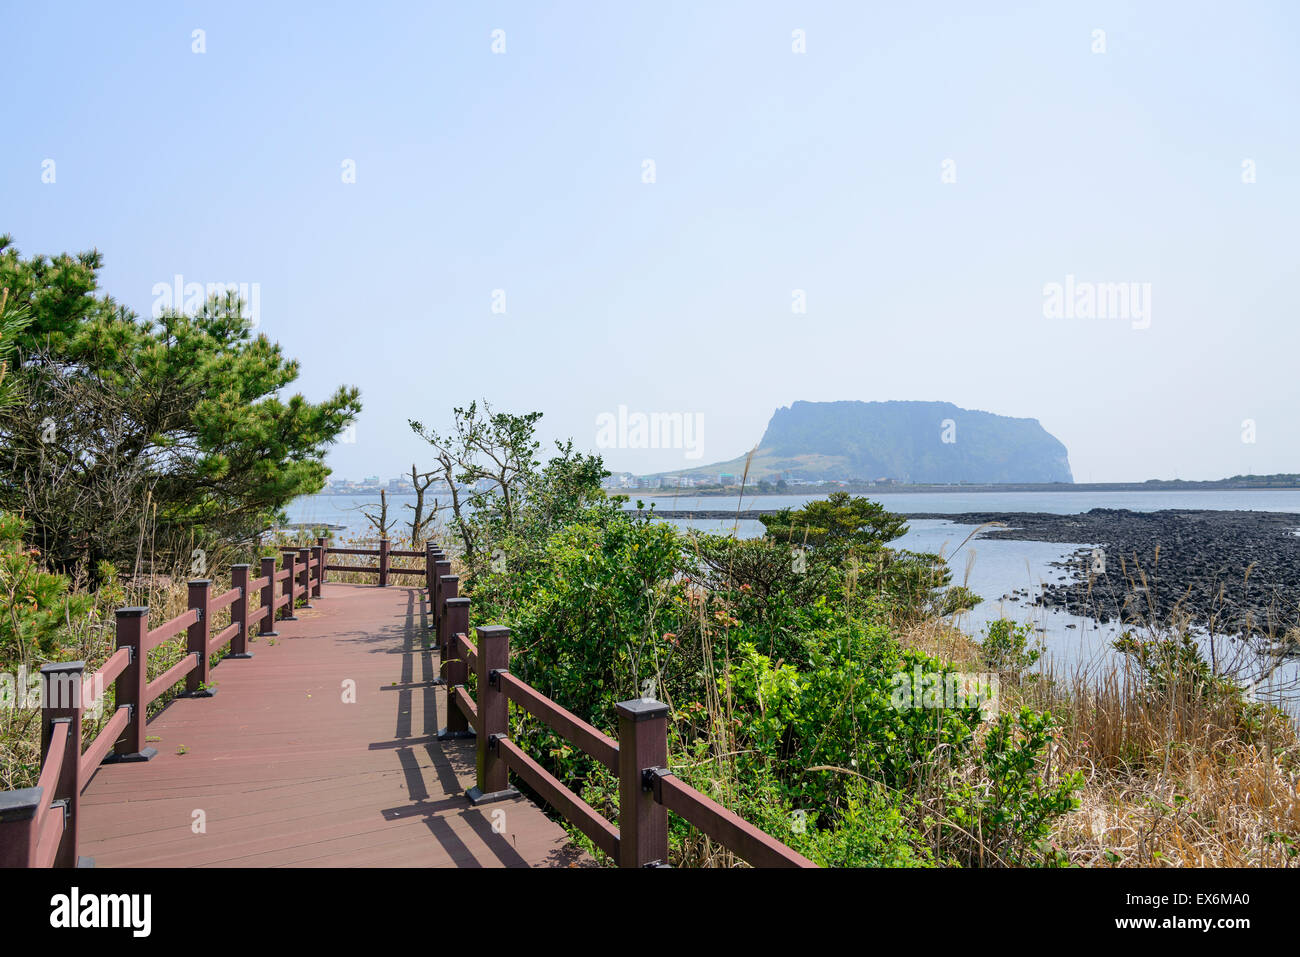 Landschaft der Olle Cours Nr. 2 in Insel Jeju, Korea. Olle besticht durch trekking Kurse entlang der Küste von Jeju Insel erstellt. Stockfoto